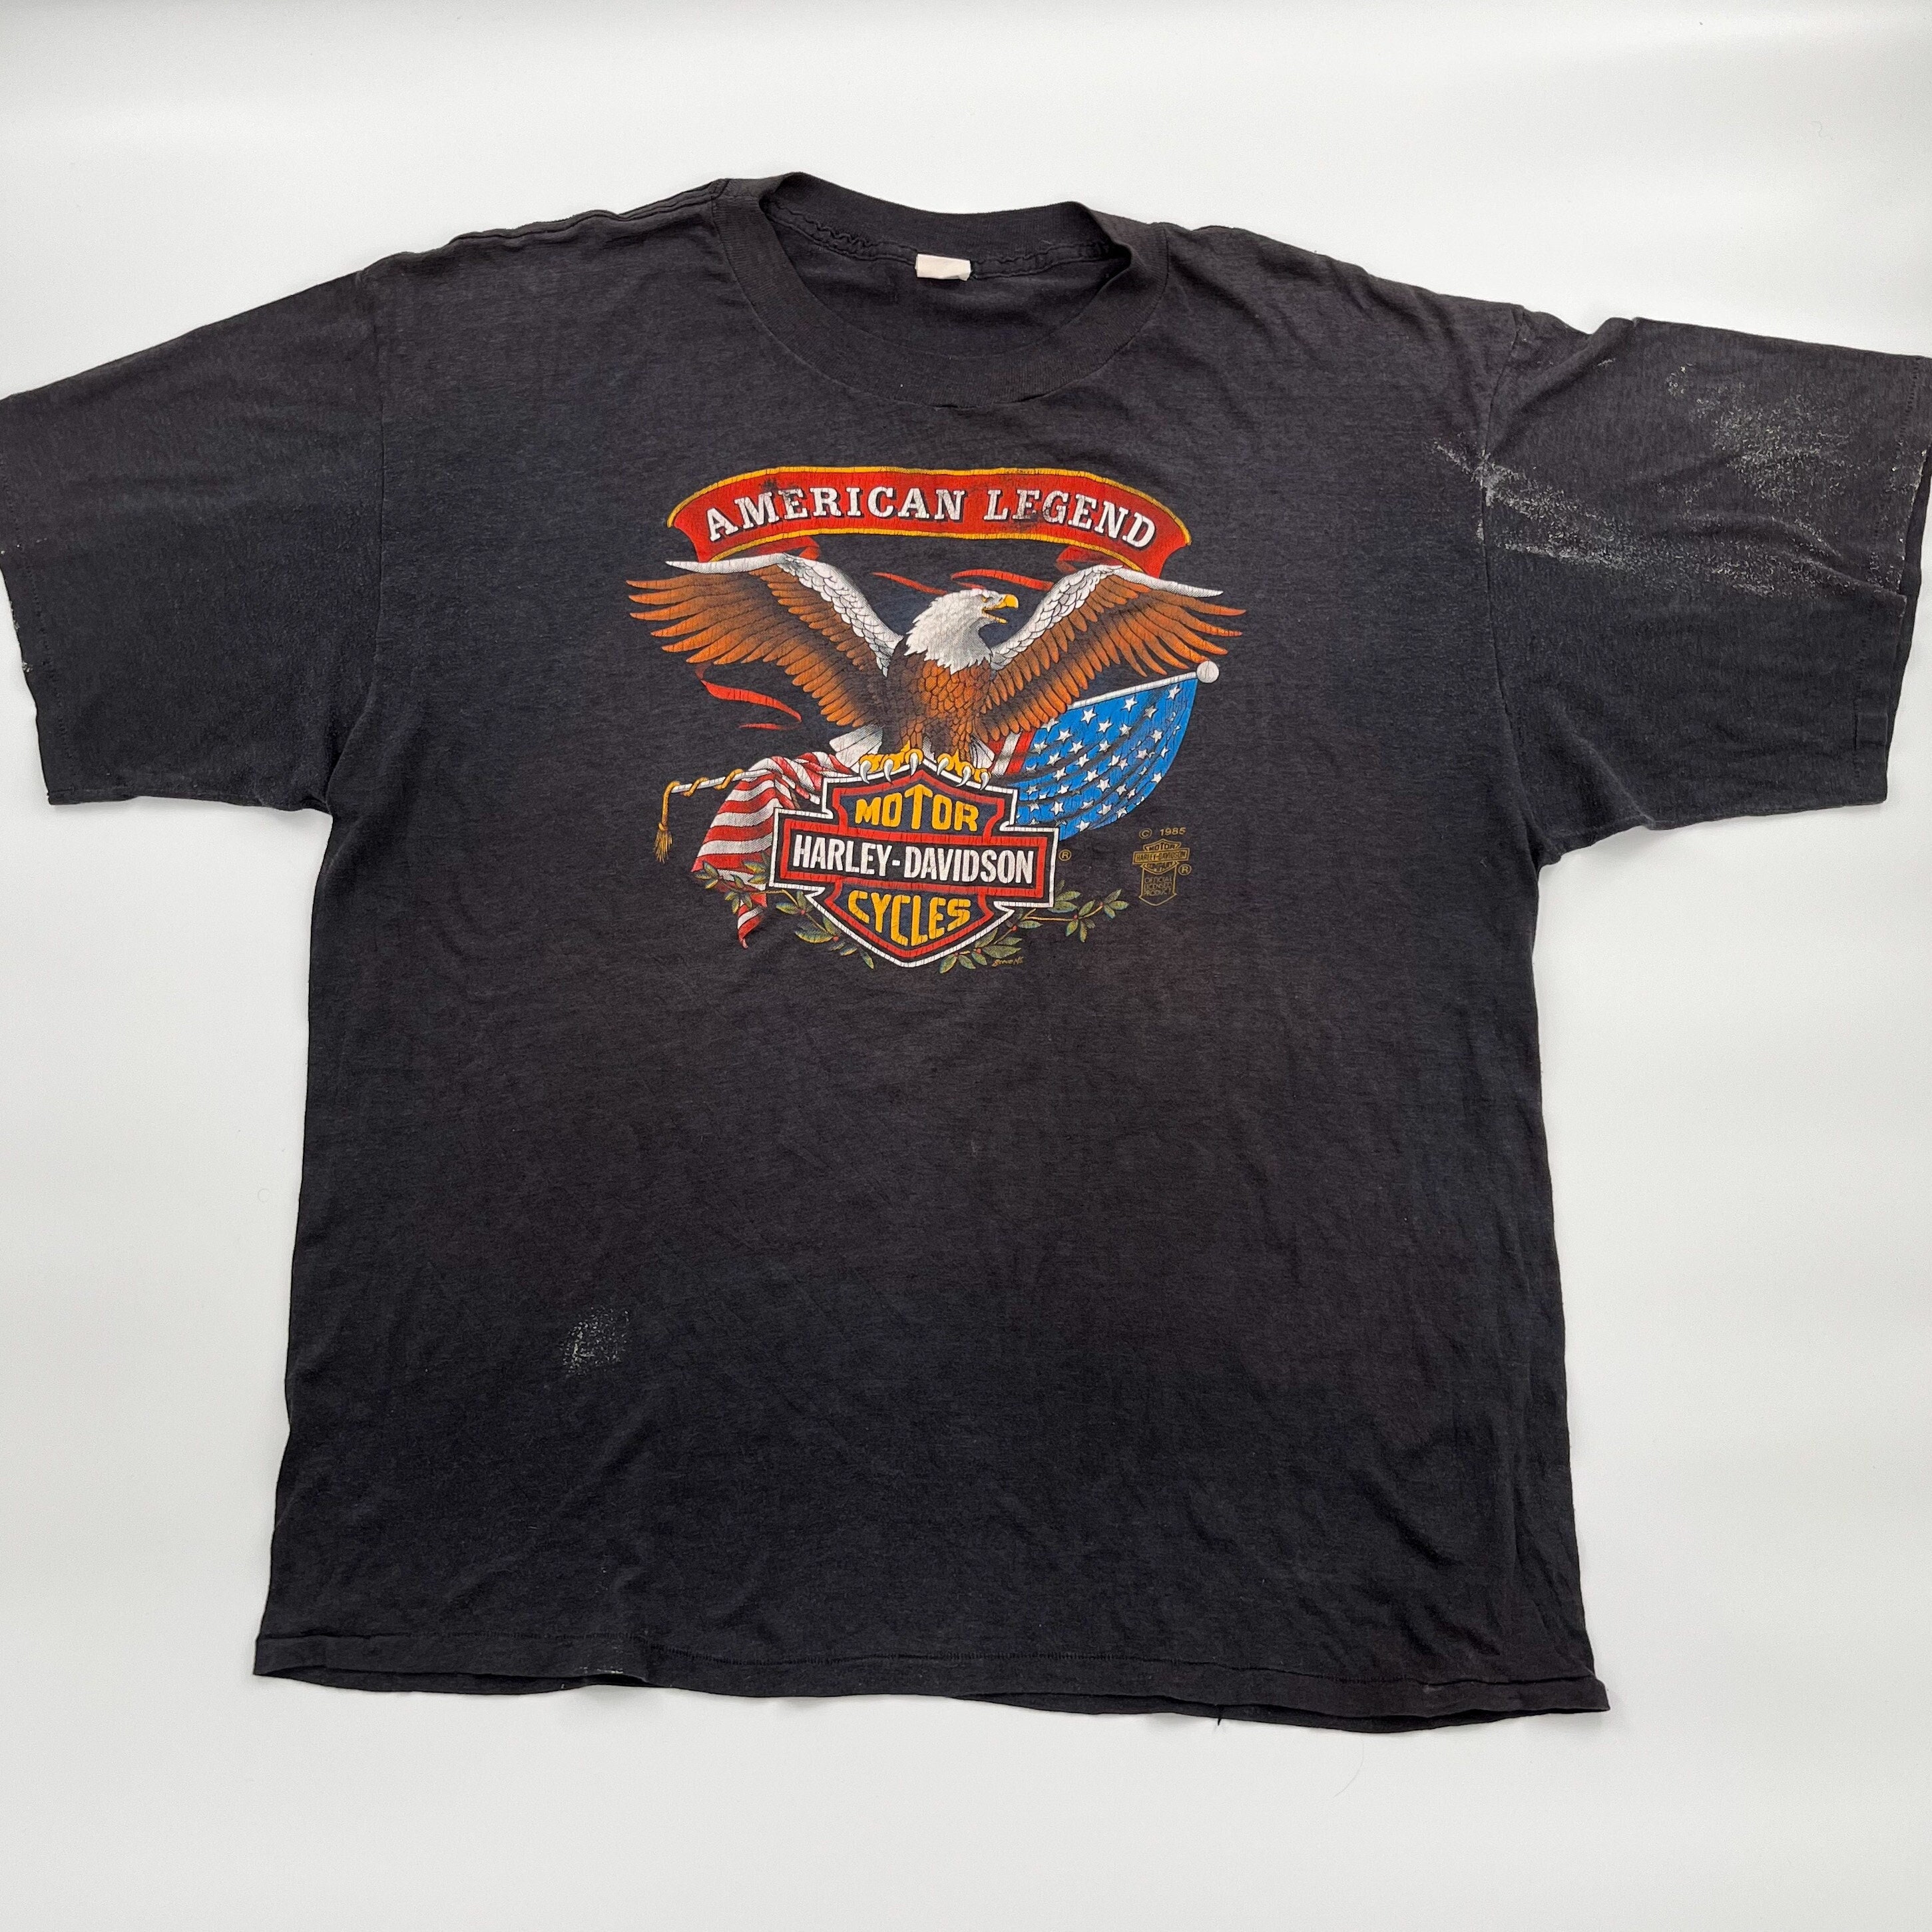 Vintage American Legend Harley Davidson Shirt | Etsy